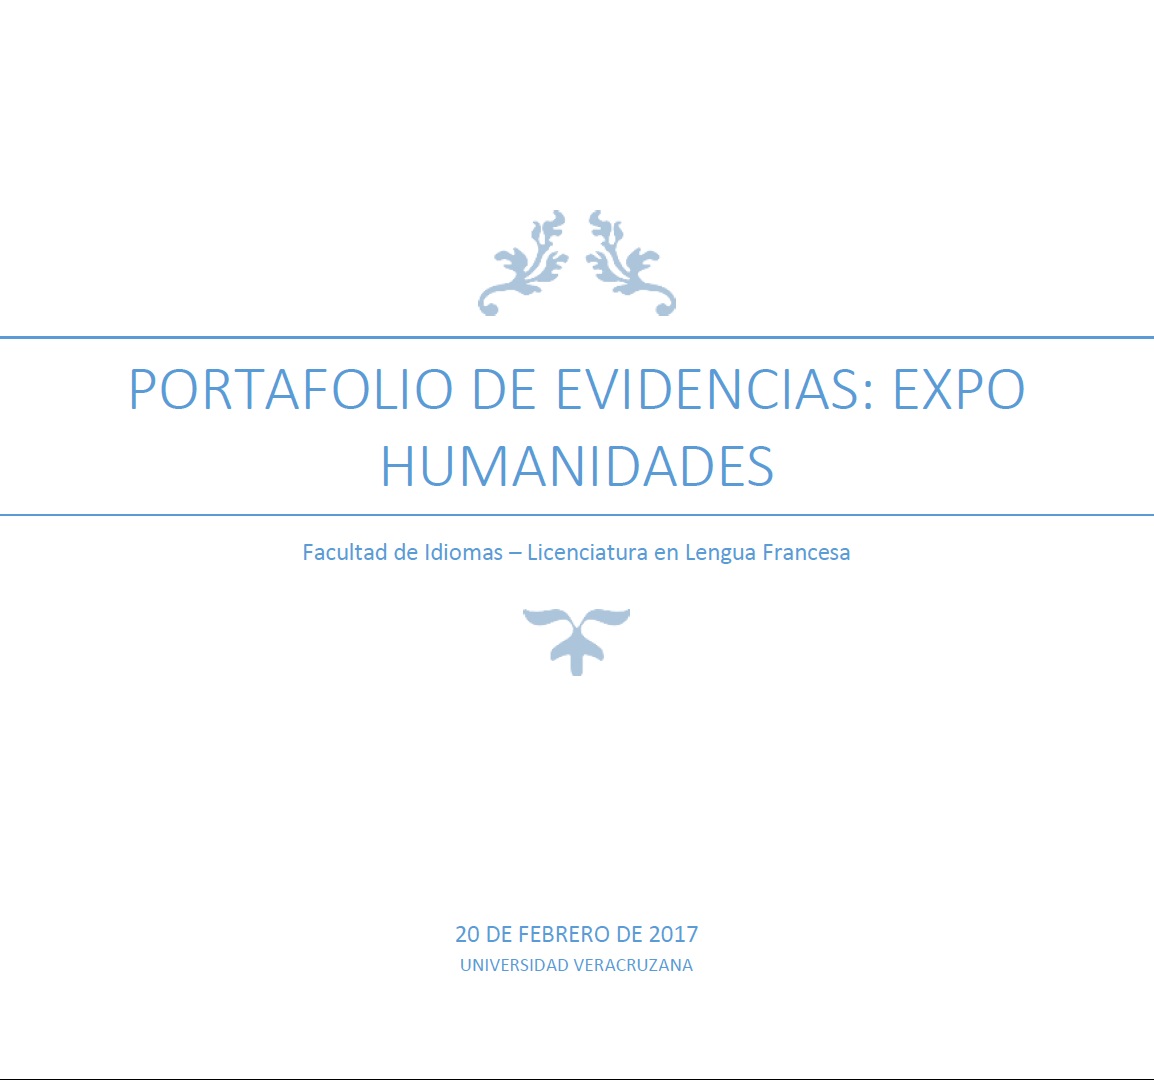 ► Portafolio de evidencias: Expo humanidades